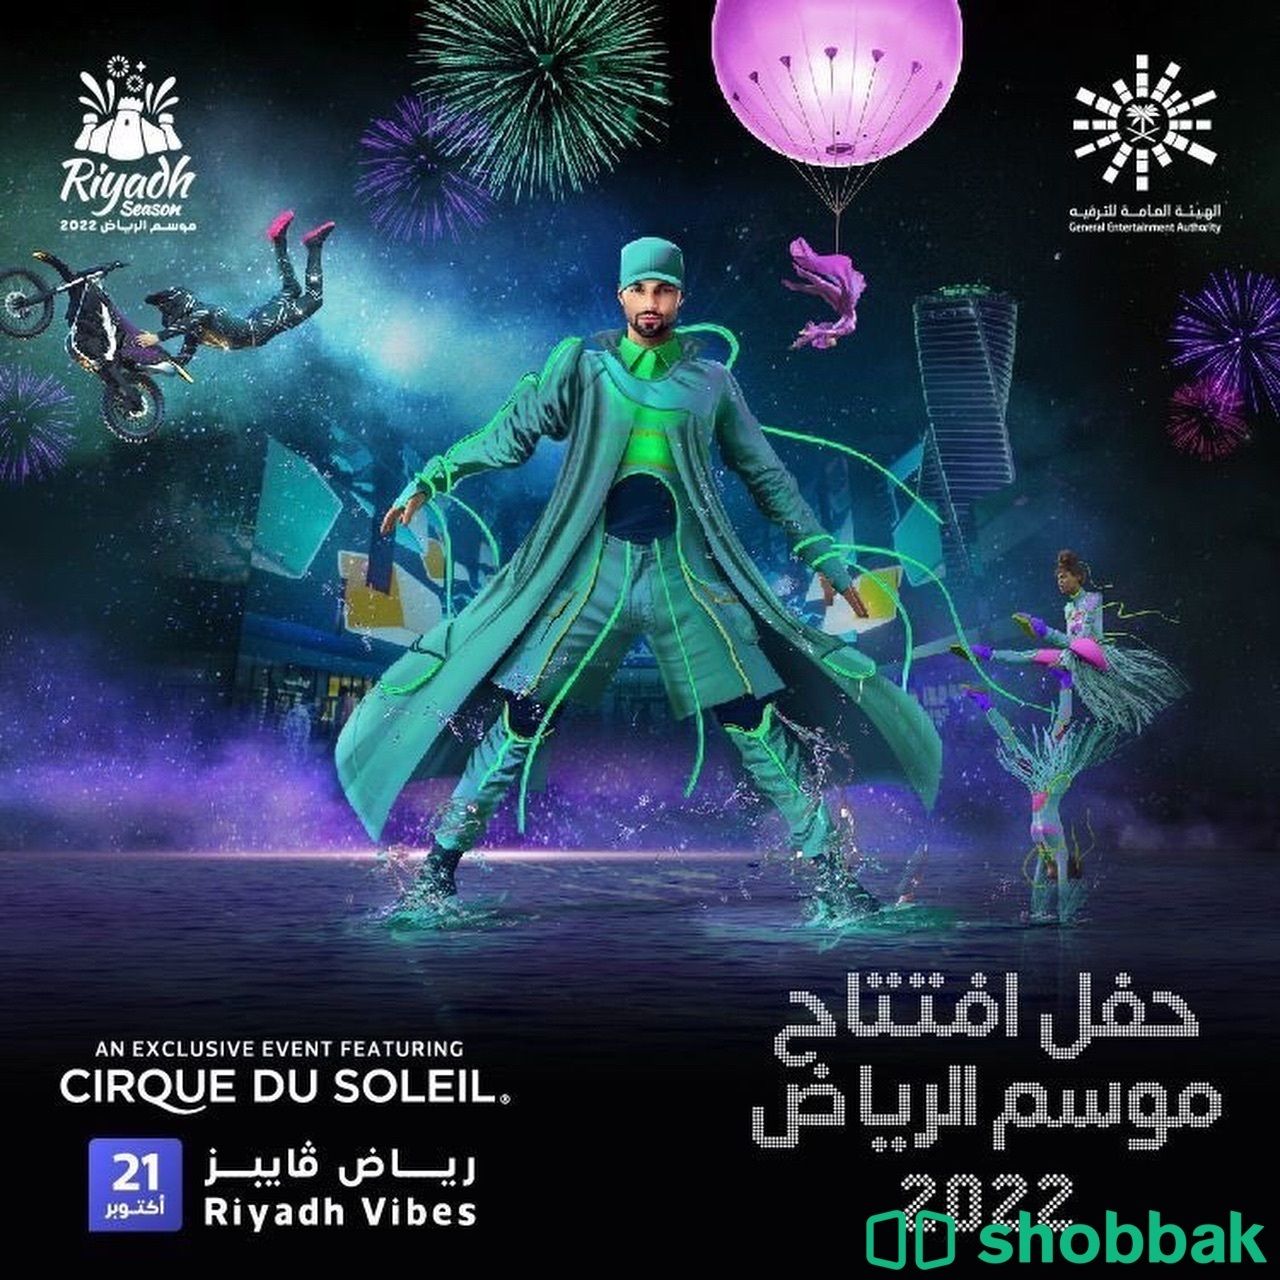 حفل افتتاح موسم الرياض Shobbak Saudi Arabia